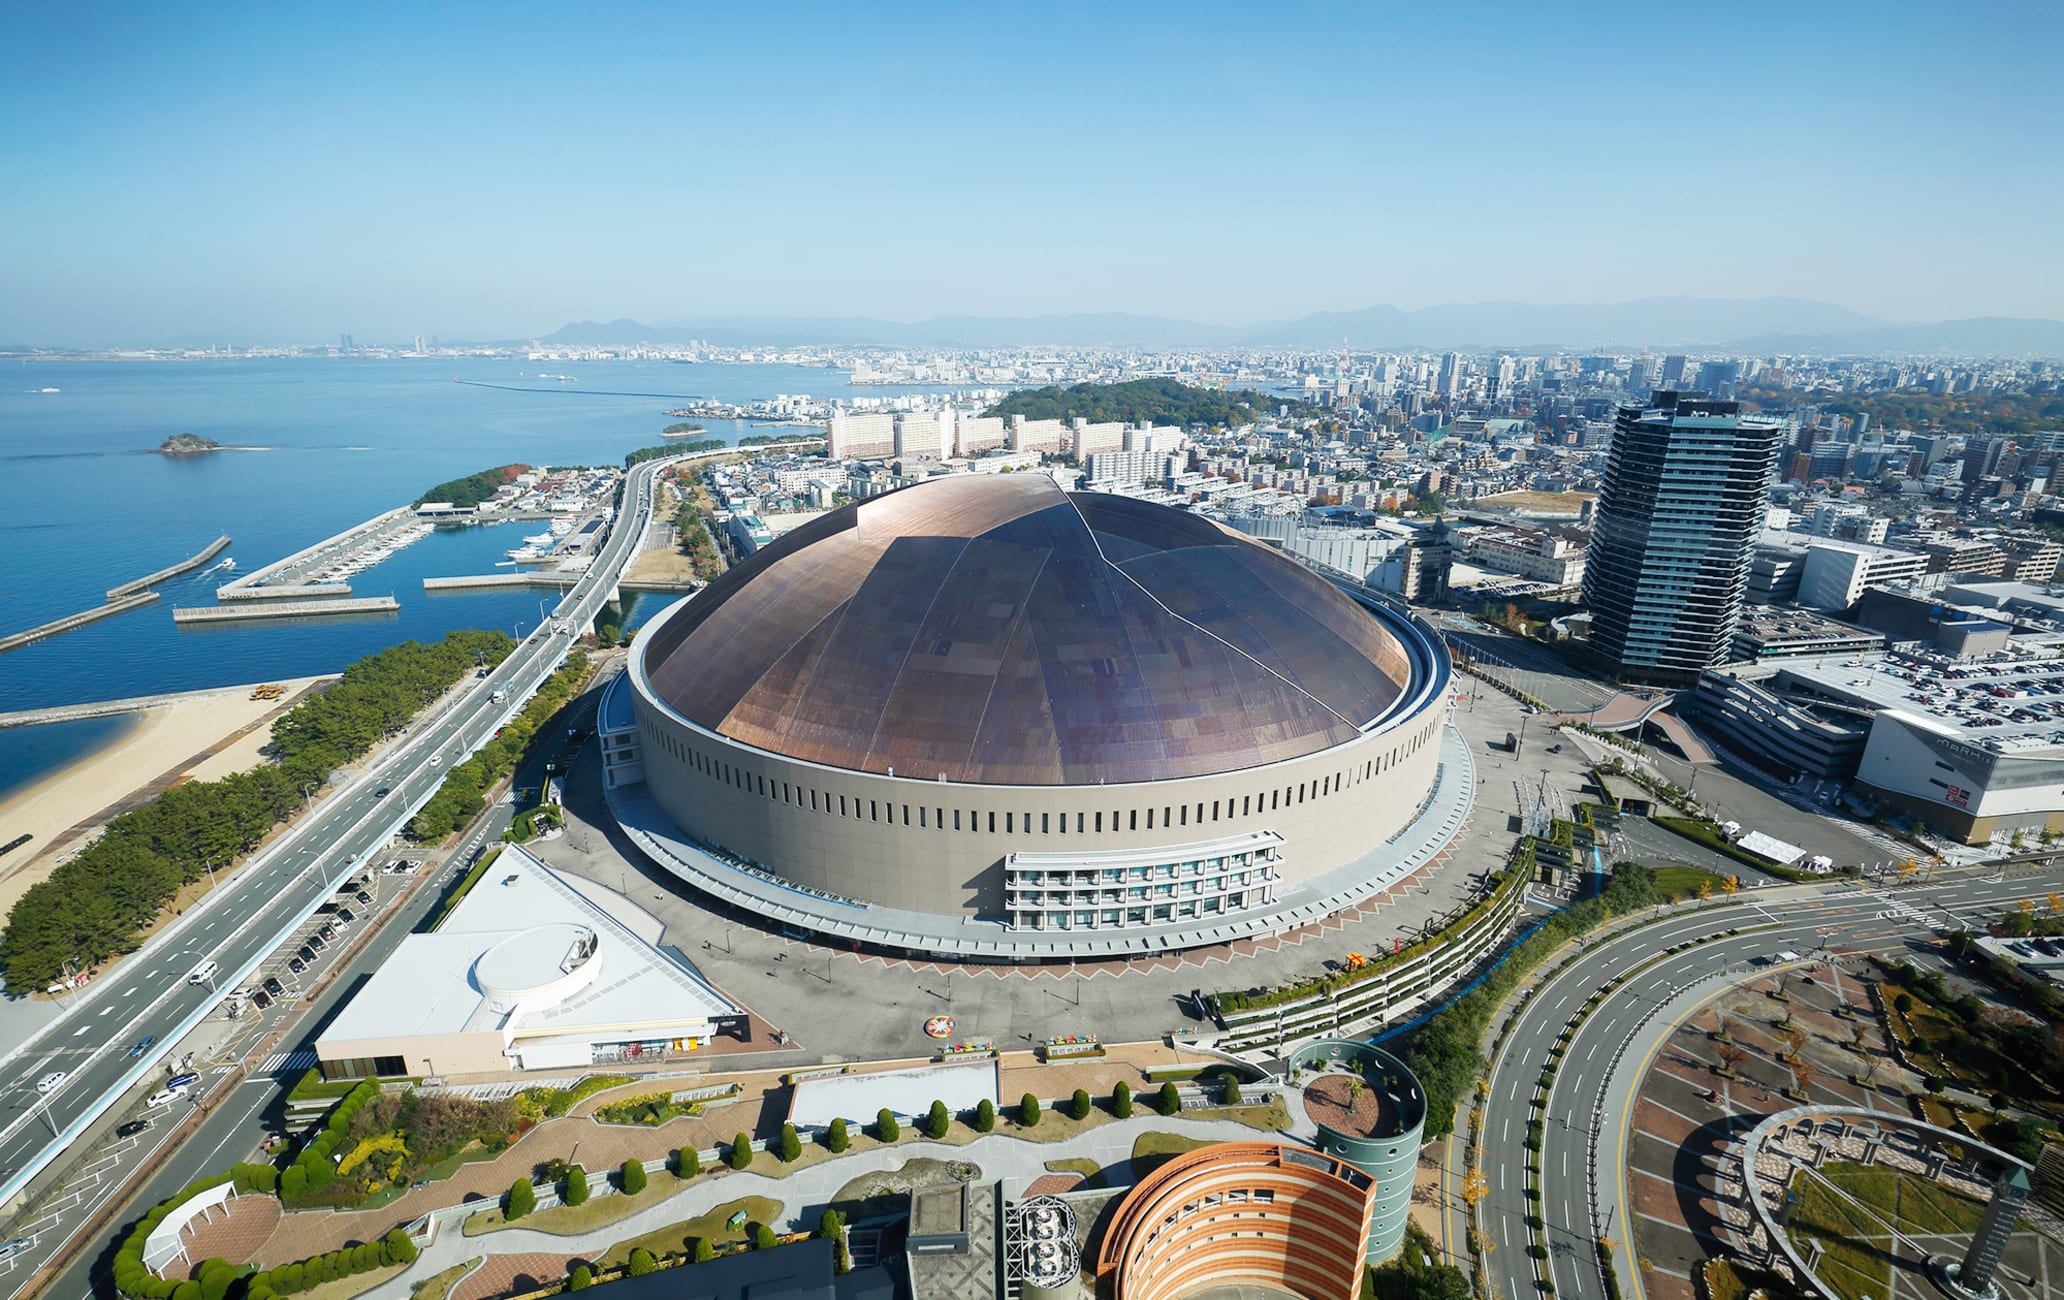 Fukuoka PayPay Dome